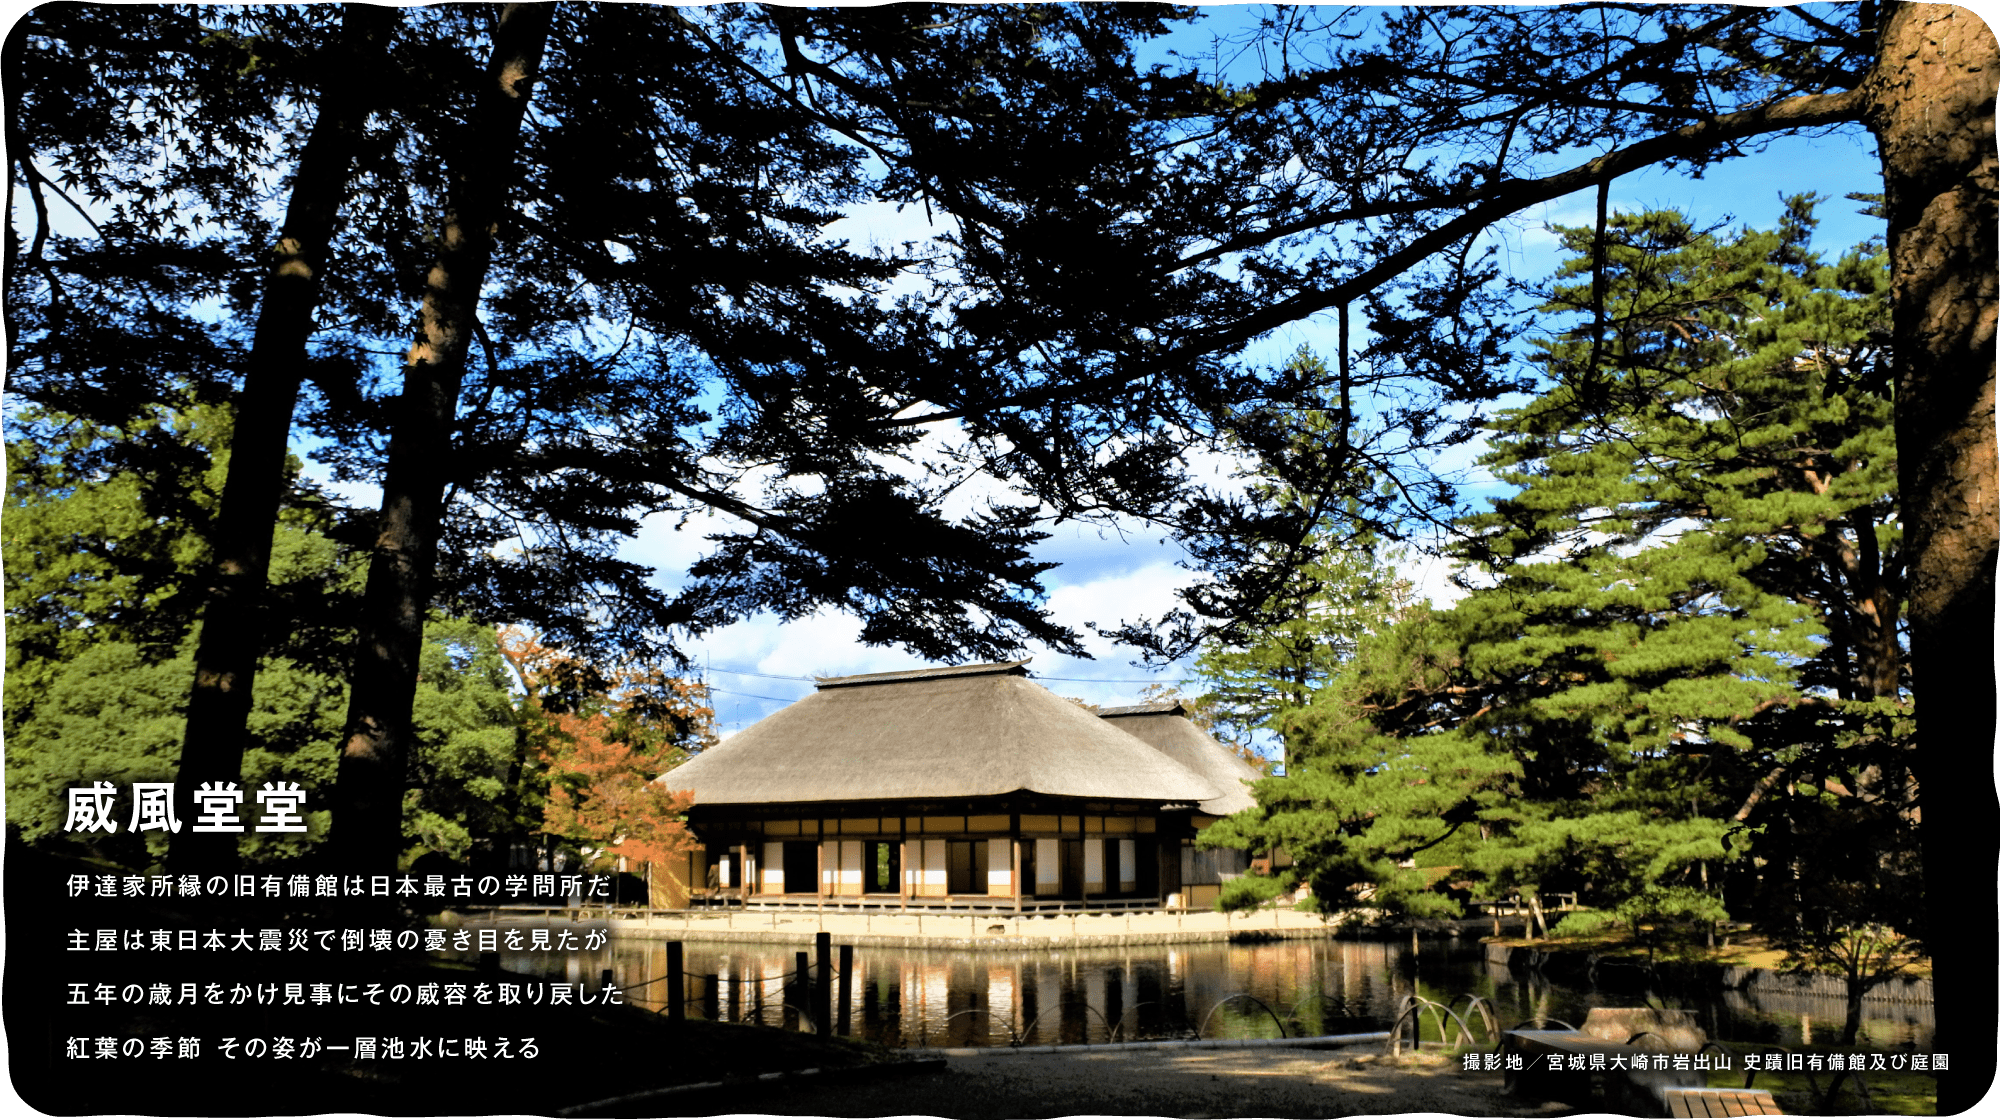 威風堂堂 伊達家所縁の旧有備館は日本最古の学問所だ主屋は東日本大震災で倒壊の憂き目を見たが五年の歳月をかけ見事にその威容を取り戻した紅葉の季節 その姿が一層池水に映える